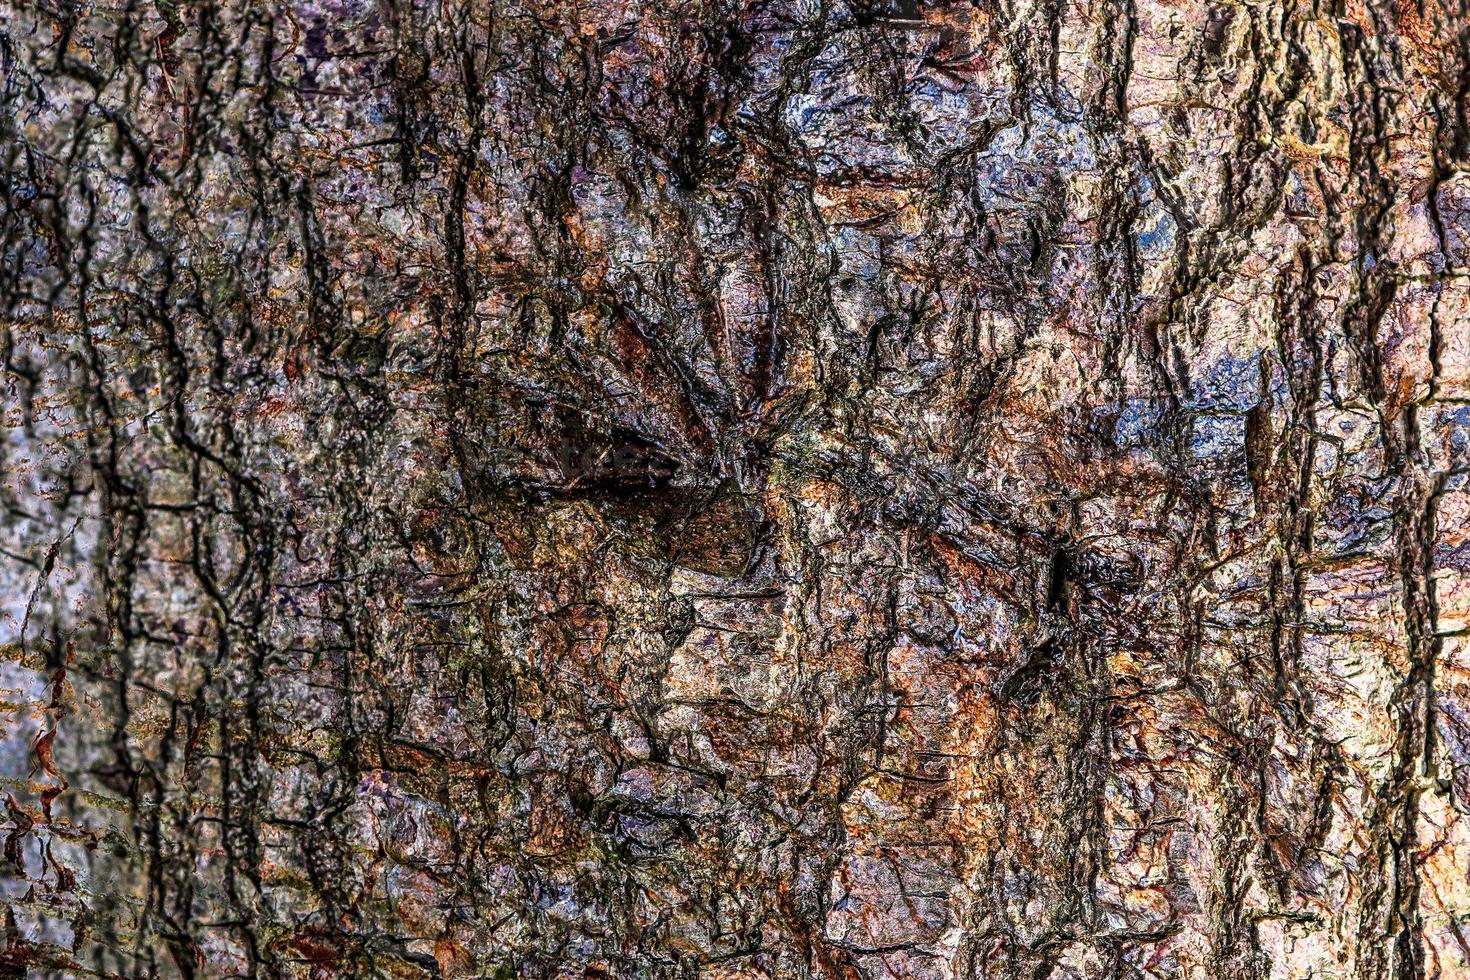 gros plan sur une texture d'écorce d'arbre très détaillée en haute résolution. photo